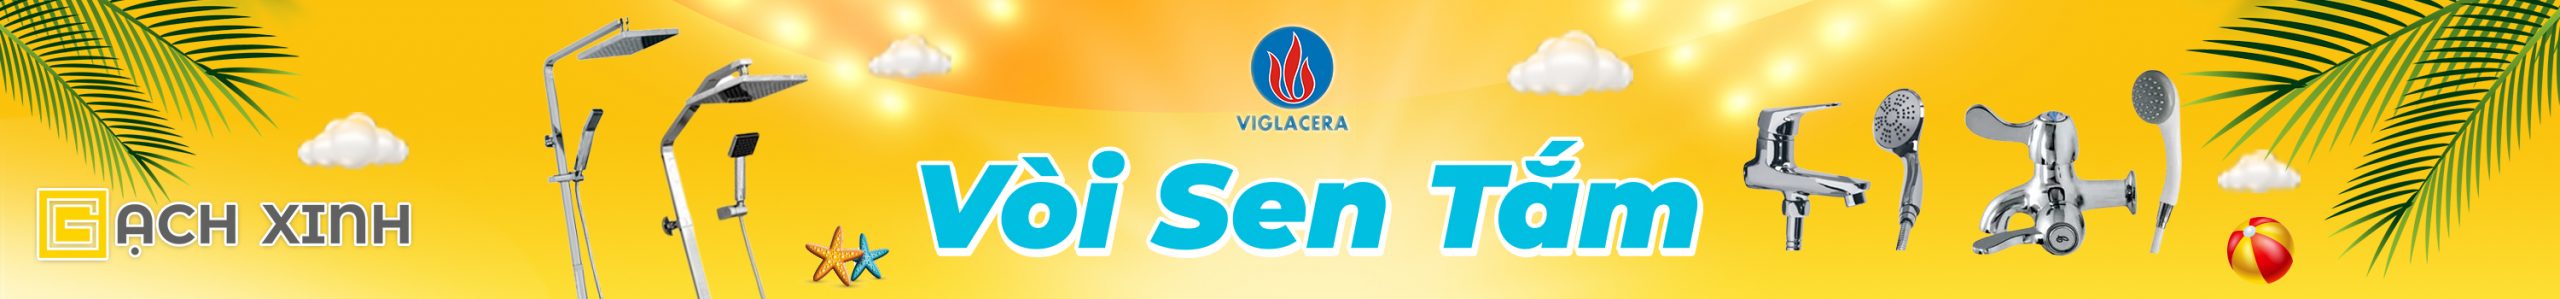 Banner Vòi Sen Tắm VIGLACERA main